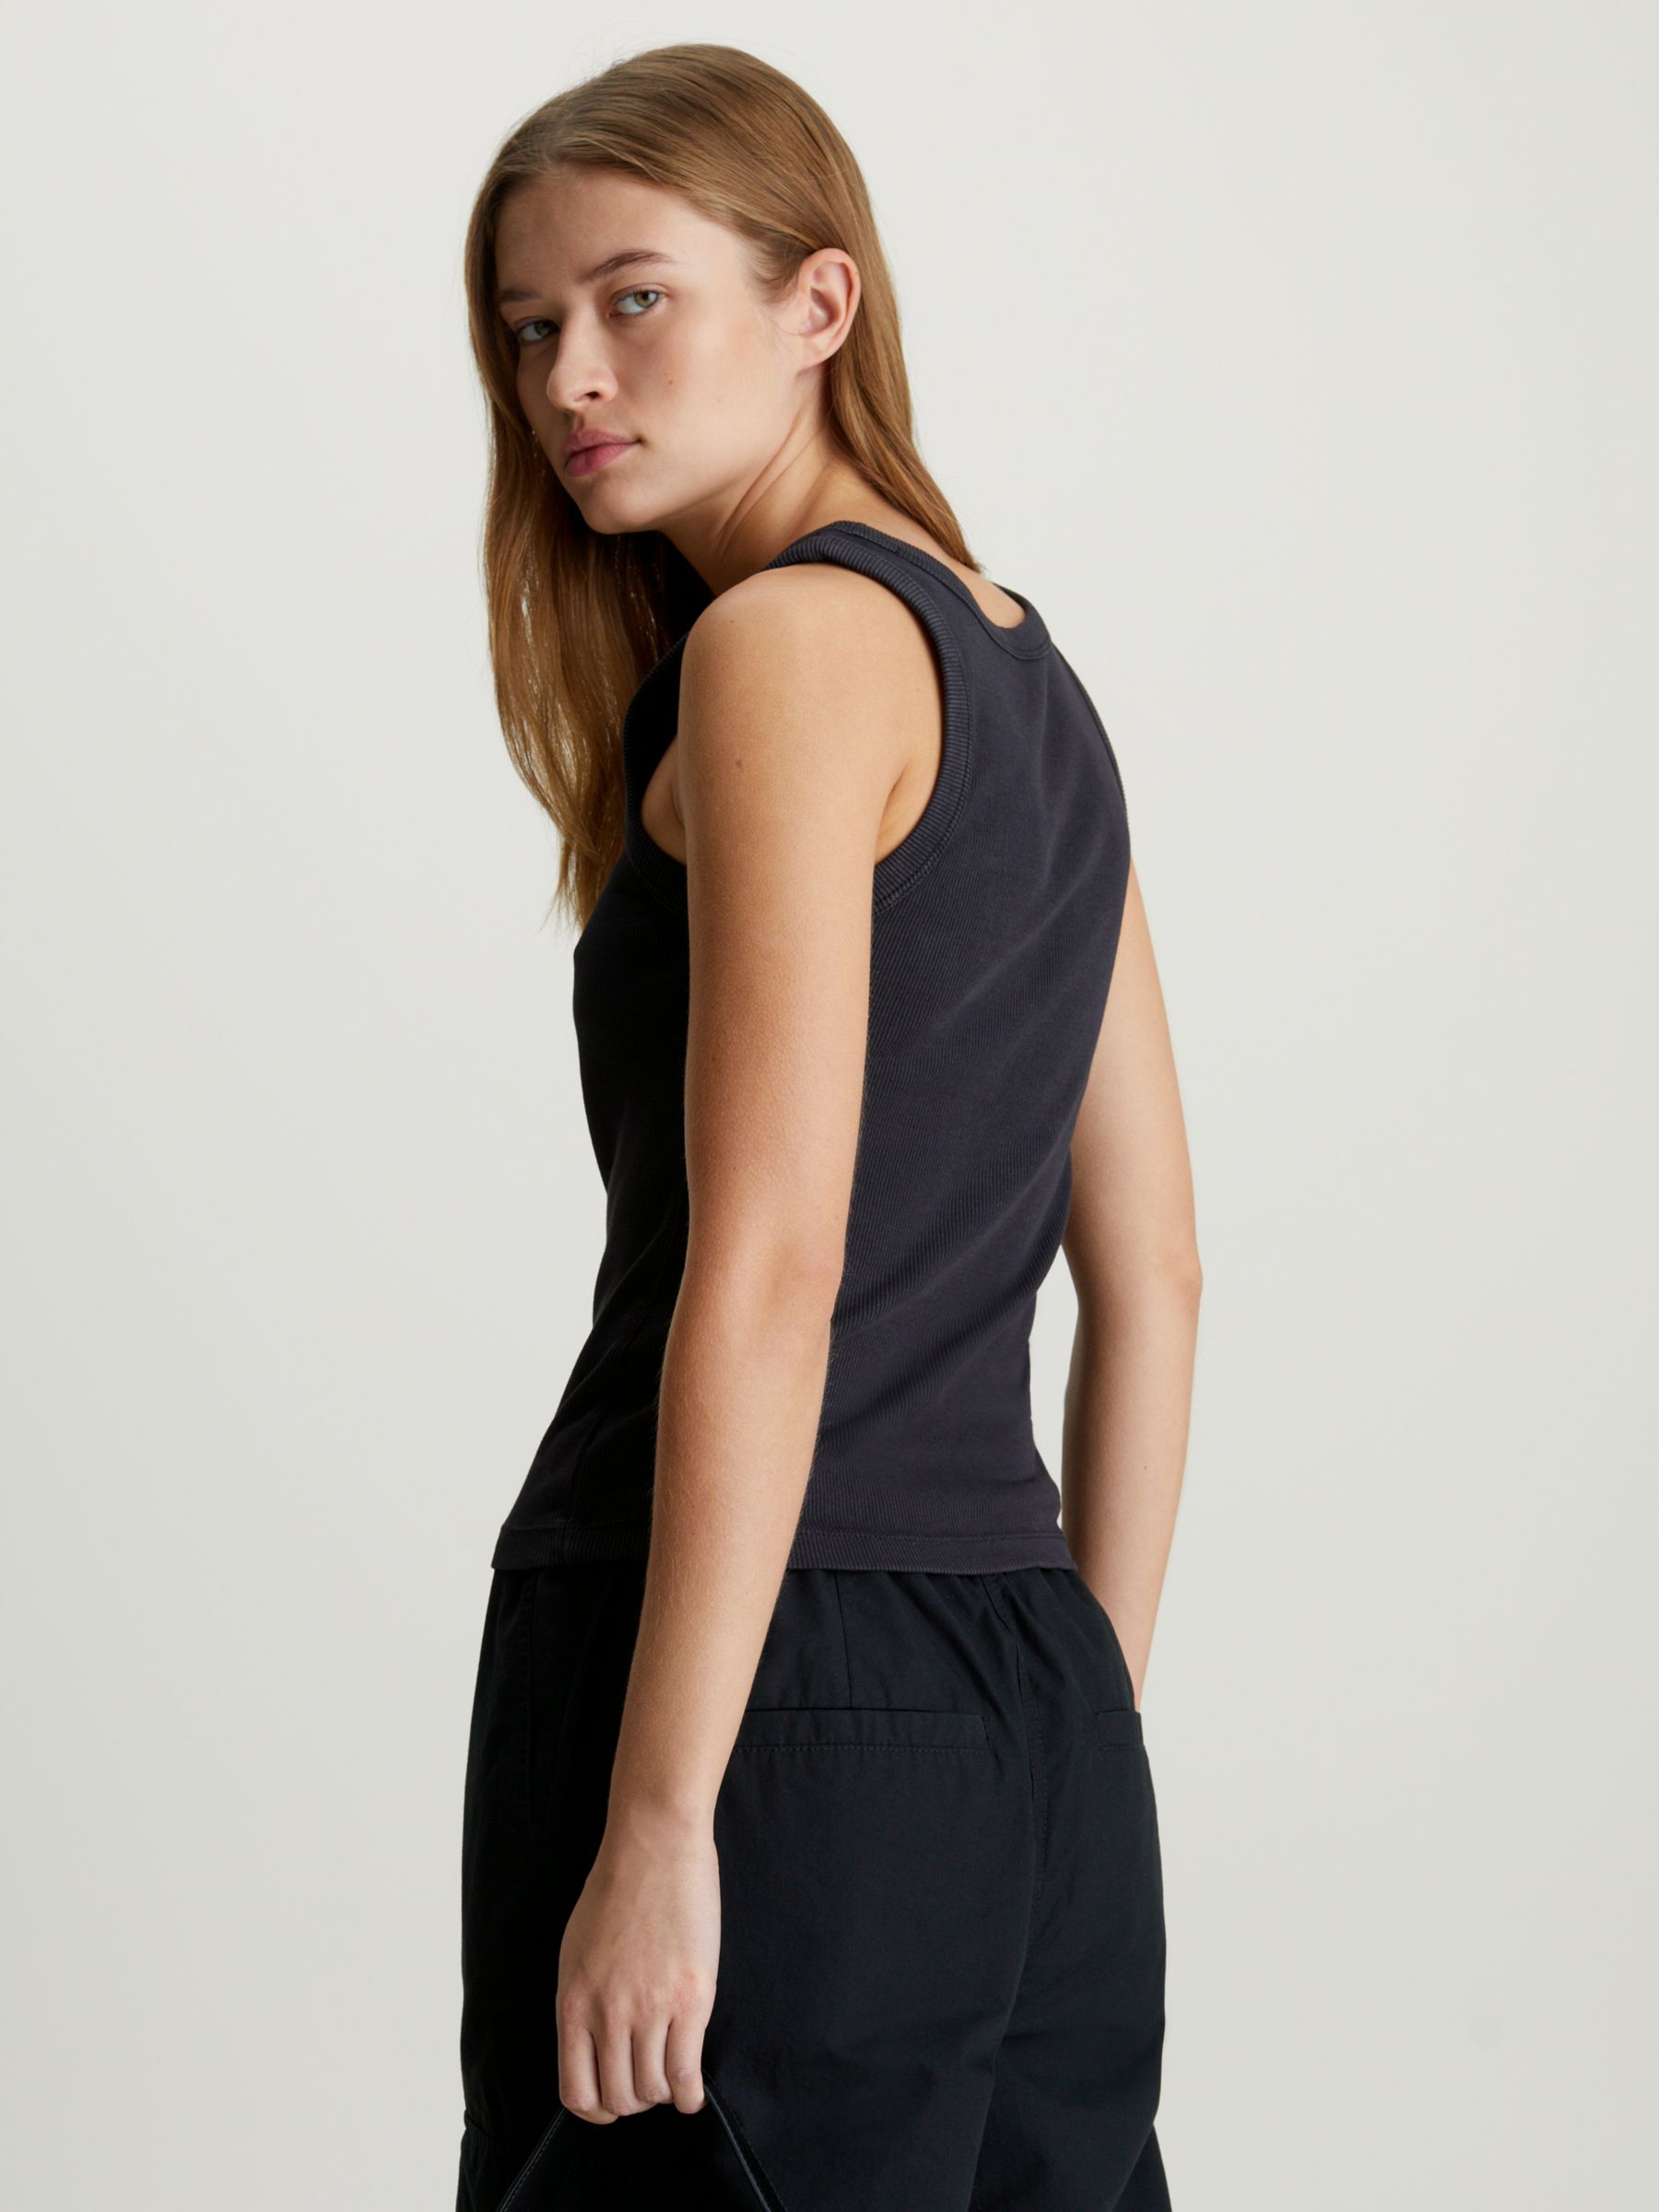 Calvin Klein Jeans Achival Logo Vest Top, Black, L